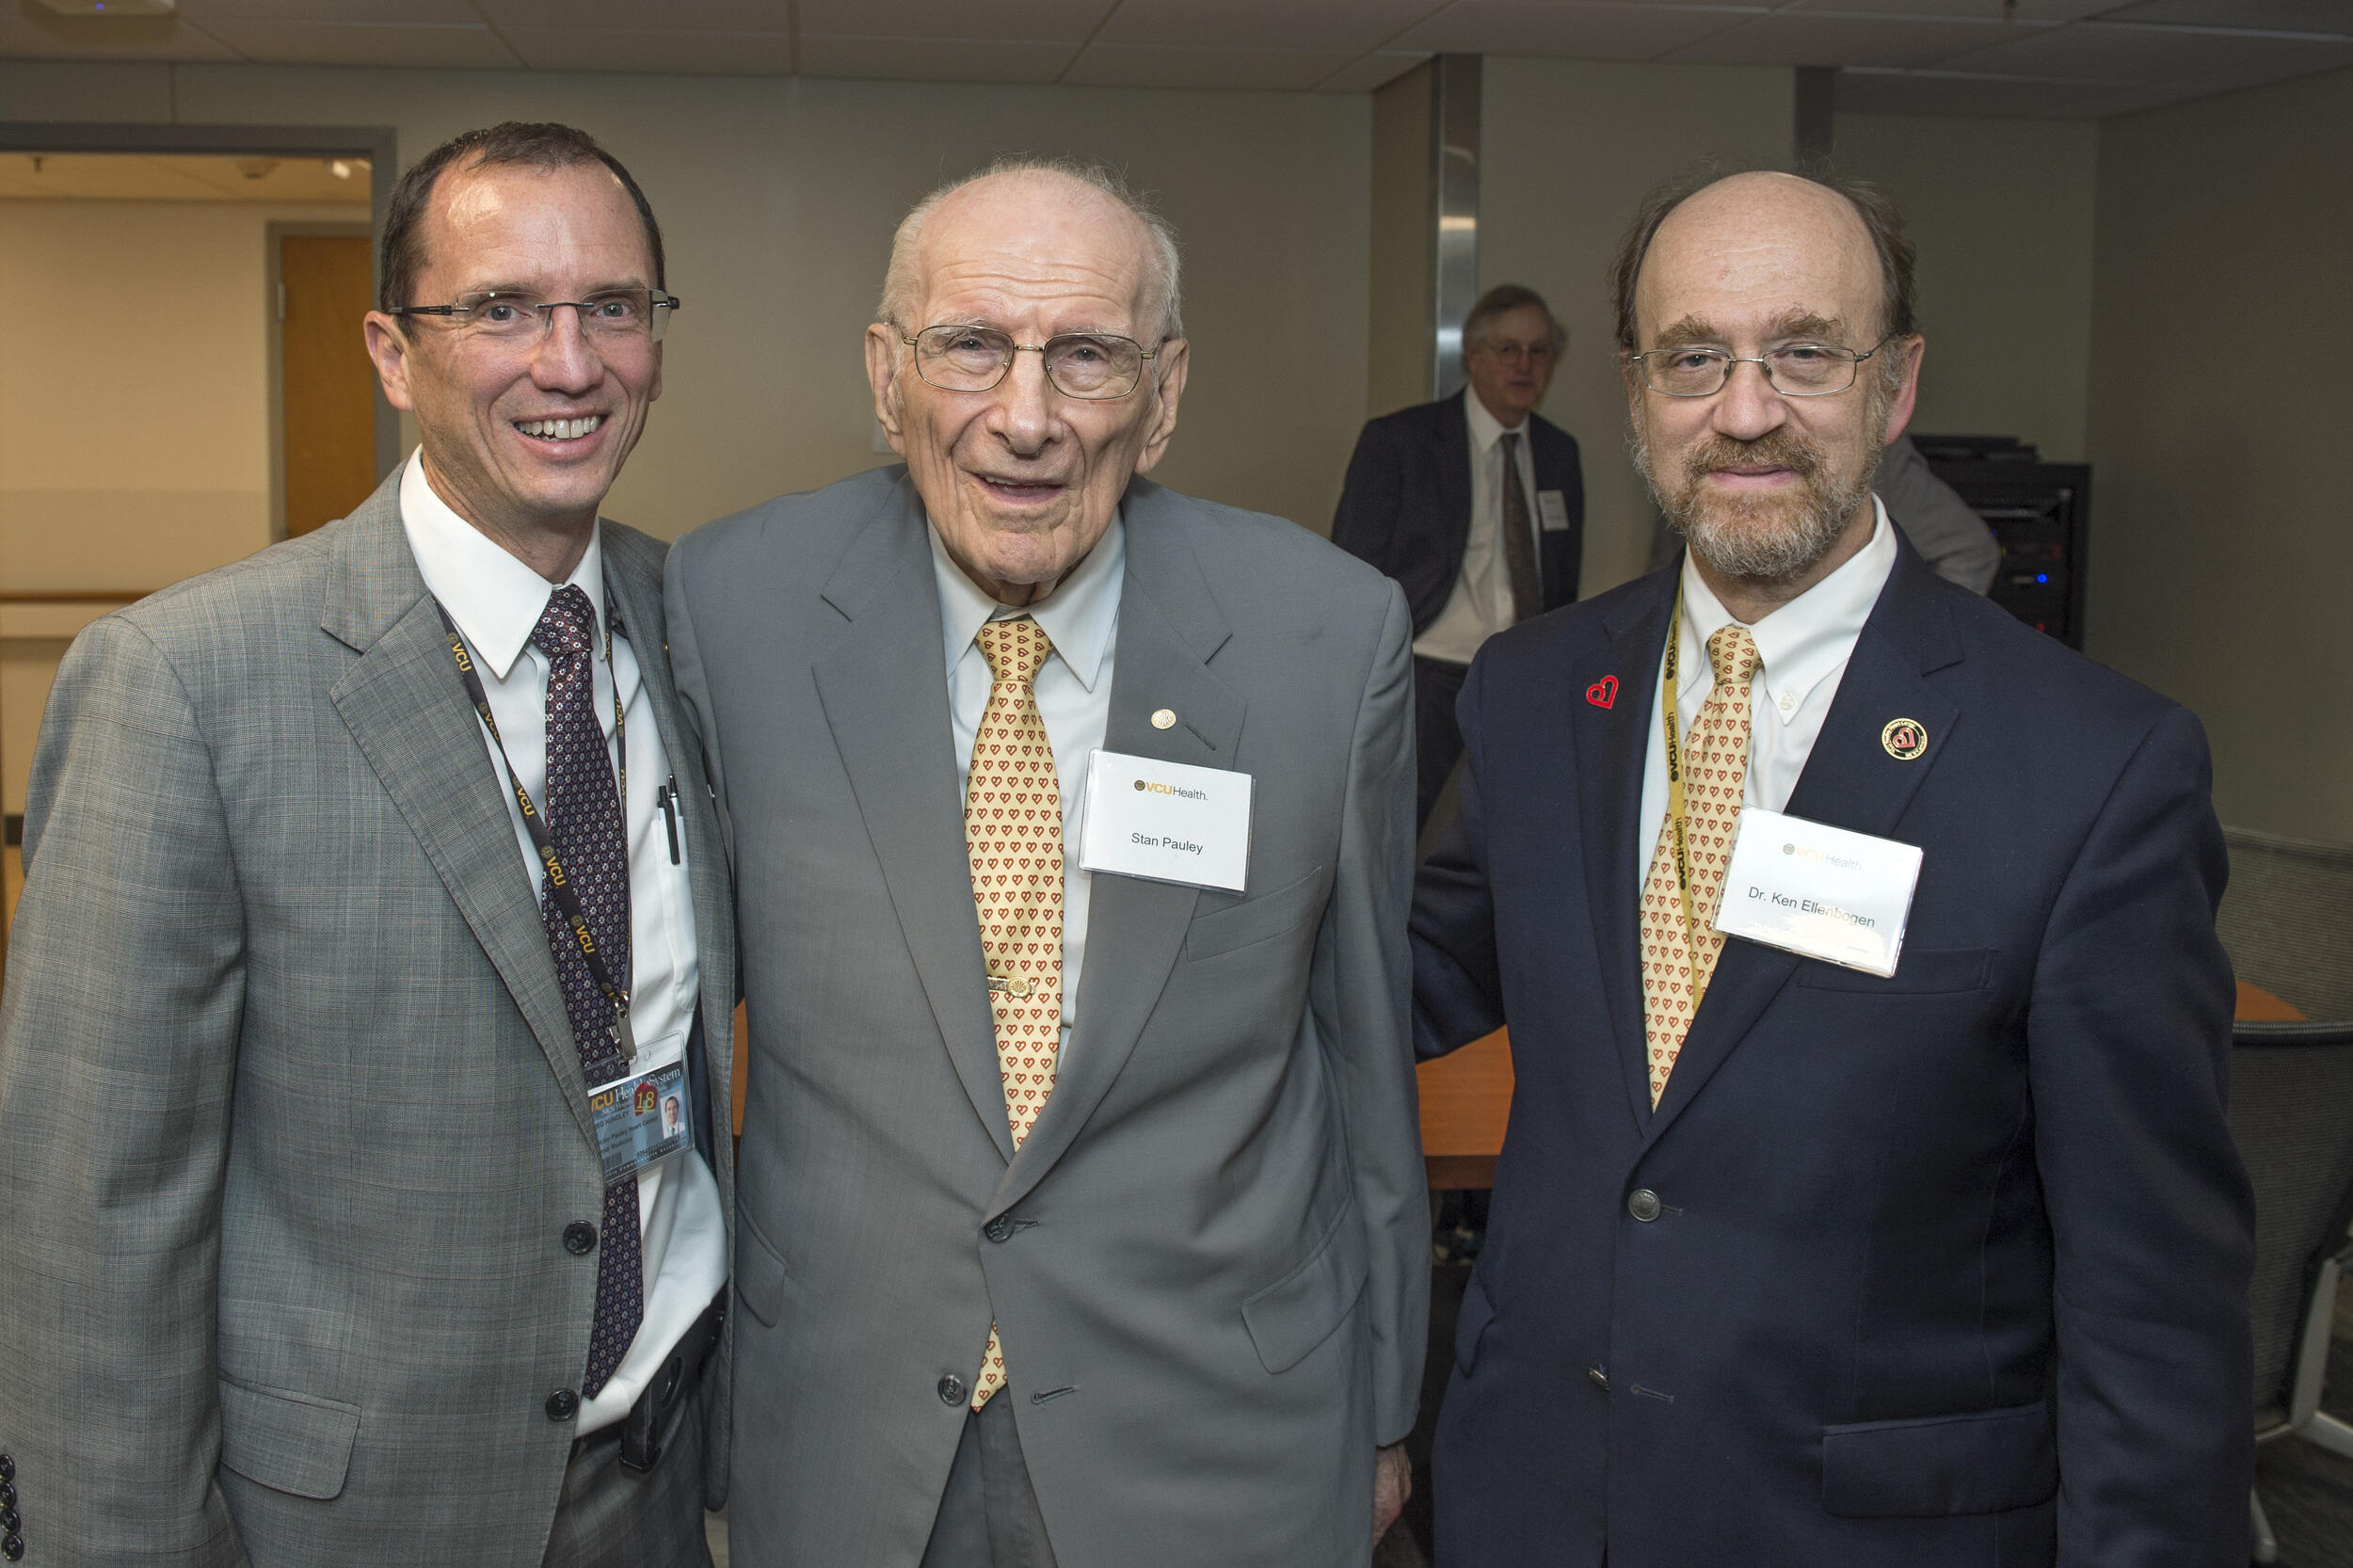 From left: Greg Hundley, Stanley Pauley, and Kenneth Ellenbogen.